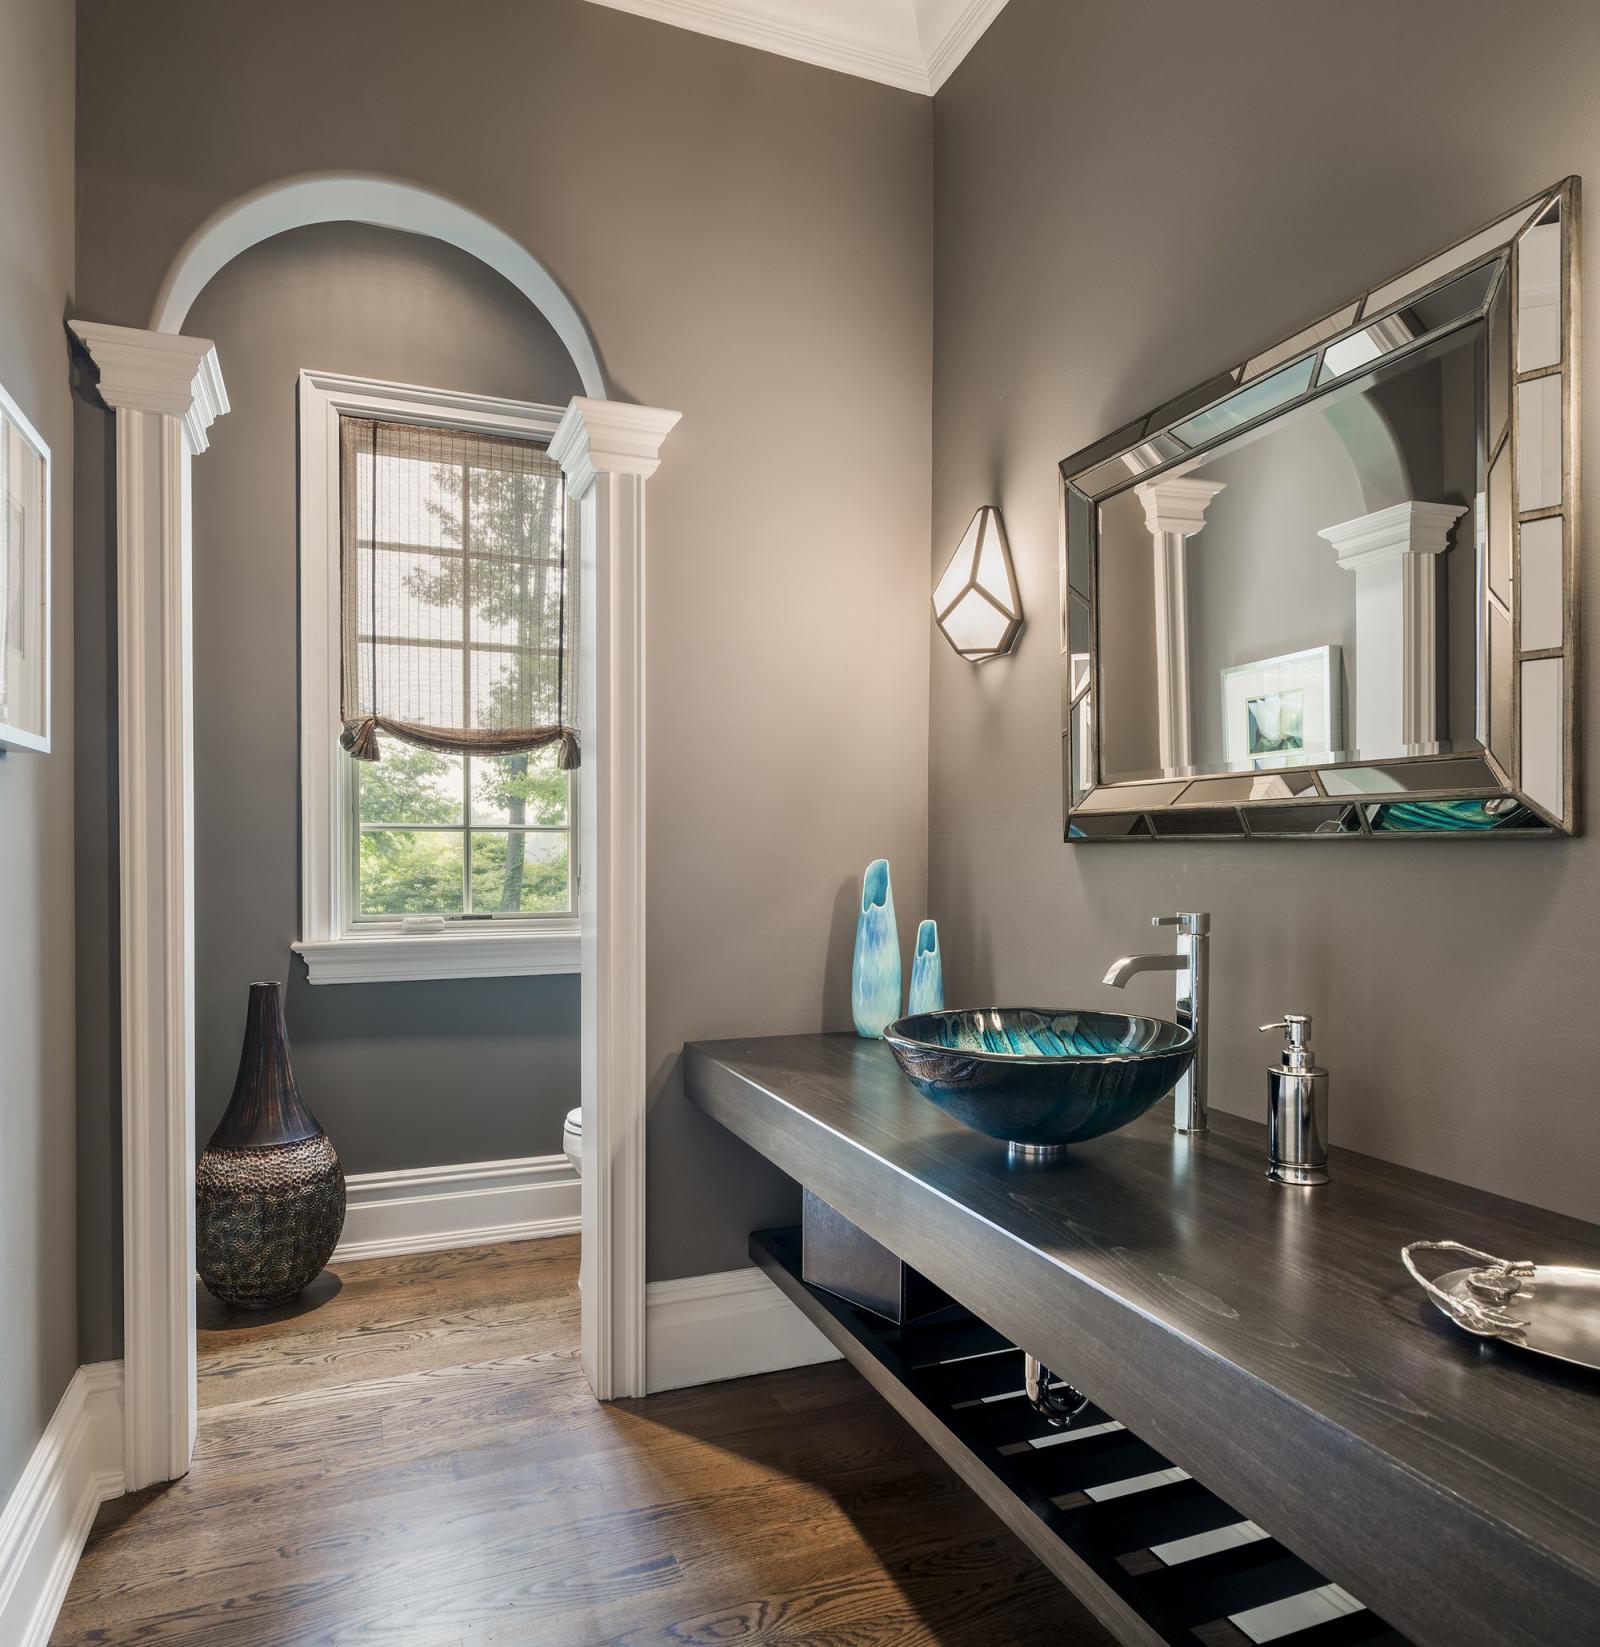 Hình ảnh phòng tắm thoáng sáng với khung cửa hình vòm, bồn rửa tay màu xanh ngọc, bộ bình trang trí, khung gương lớn